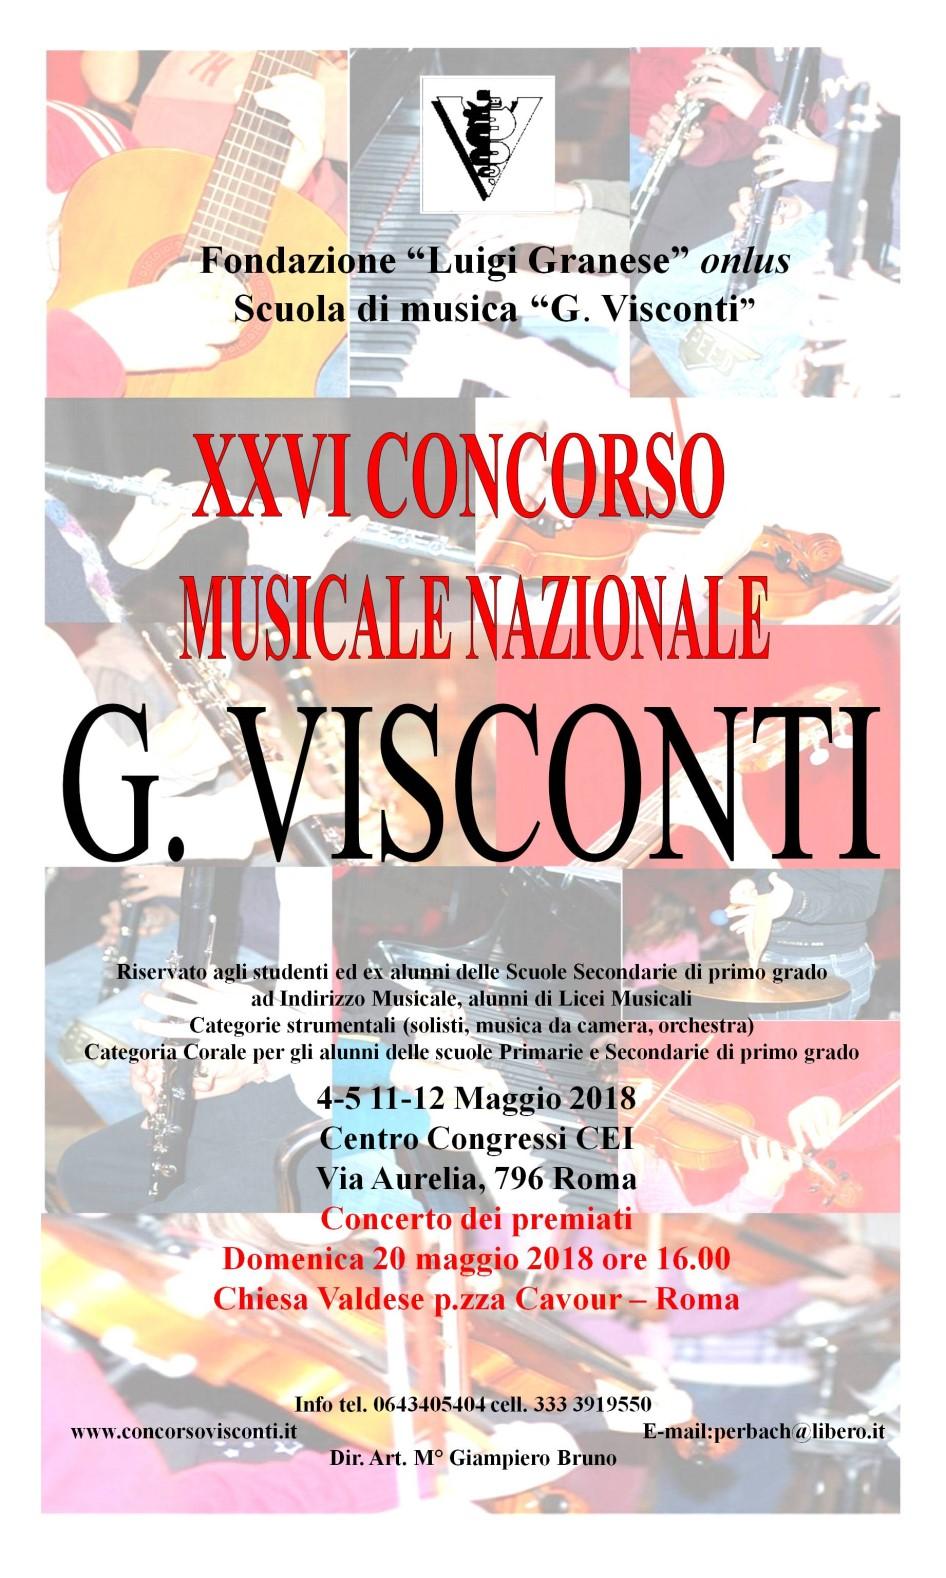 4. XXVI Concorso Musicale Nazionale G. Visconti Roma, 4-5 e 11-12 Maggio 2018 La Fondazione Luigi Granese e la Scuola di Musica G.